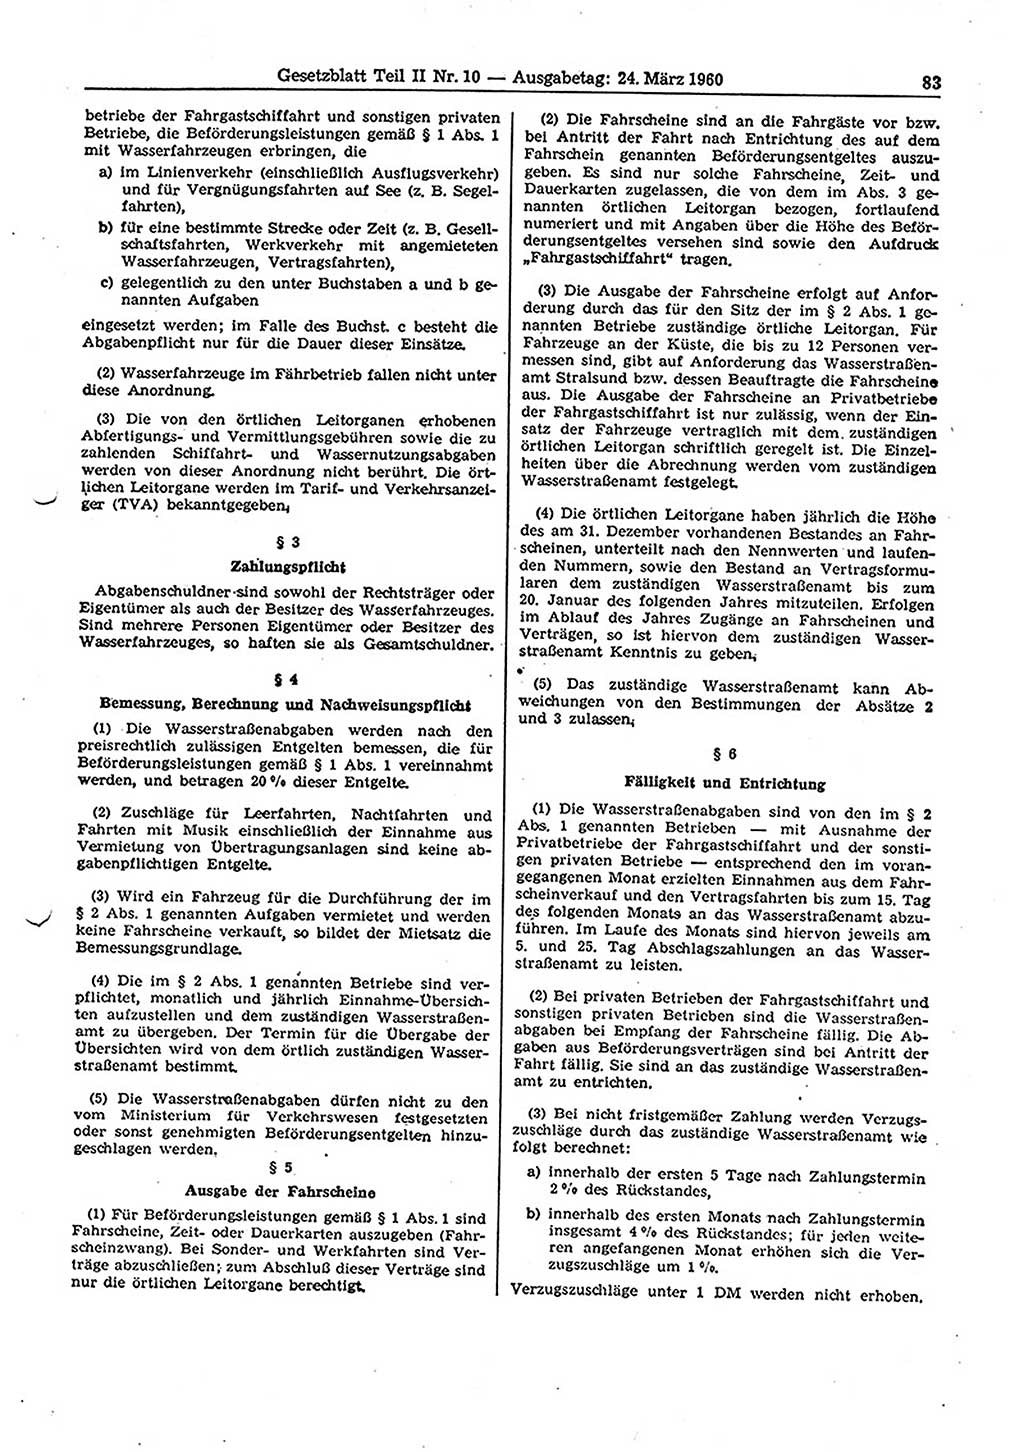 Gesetzblatt (GBl.) der Deutschen Demokratischen Republik (DDR) Teil ⅠⅠ 1960, Seite 83 (GBl. DDR ⅠⅠ 1960, S. 83)